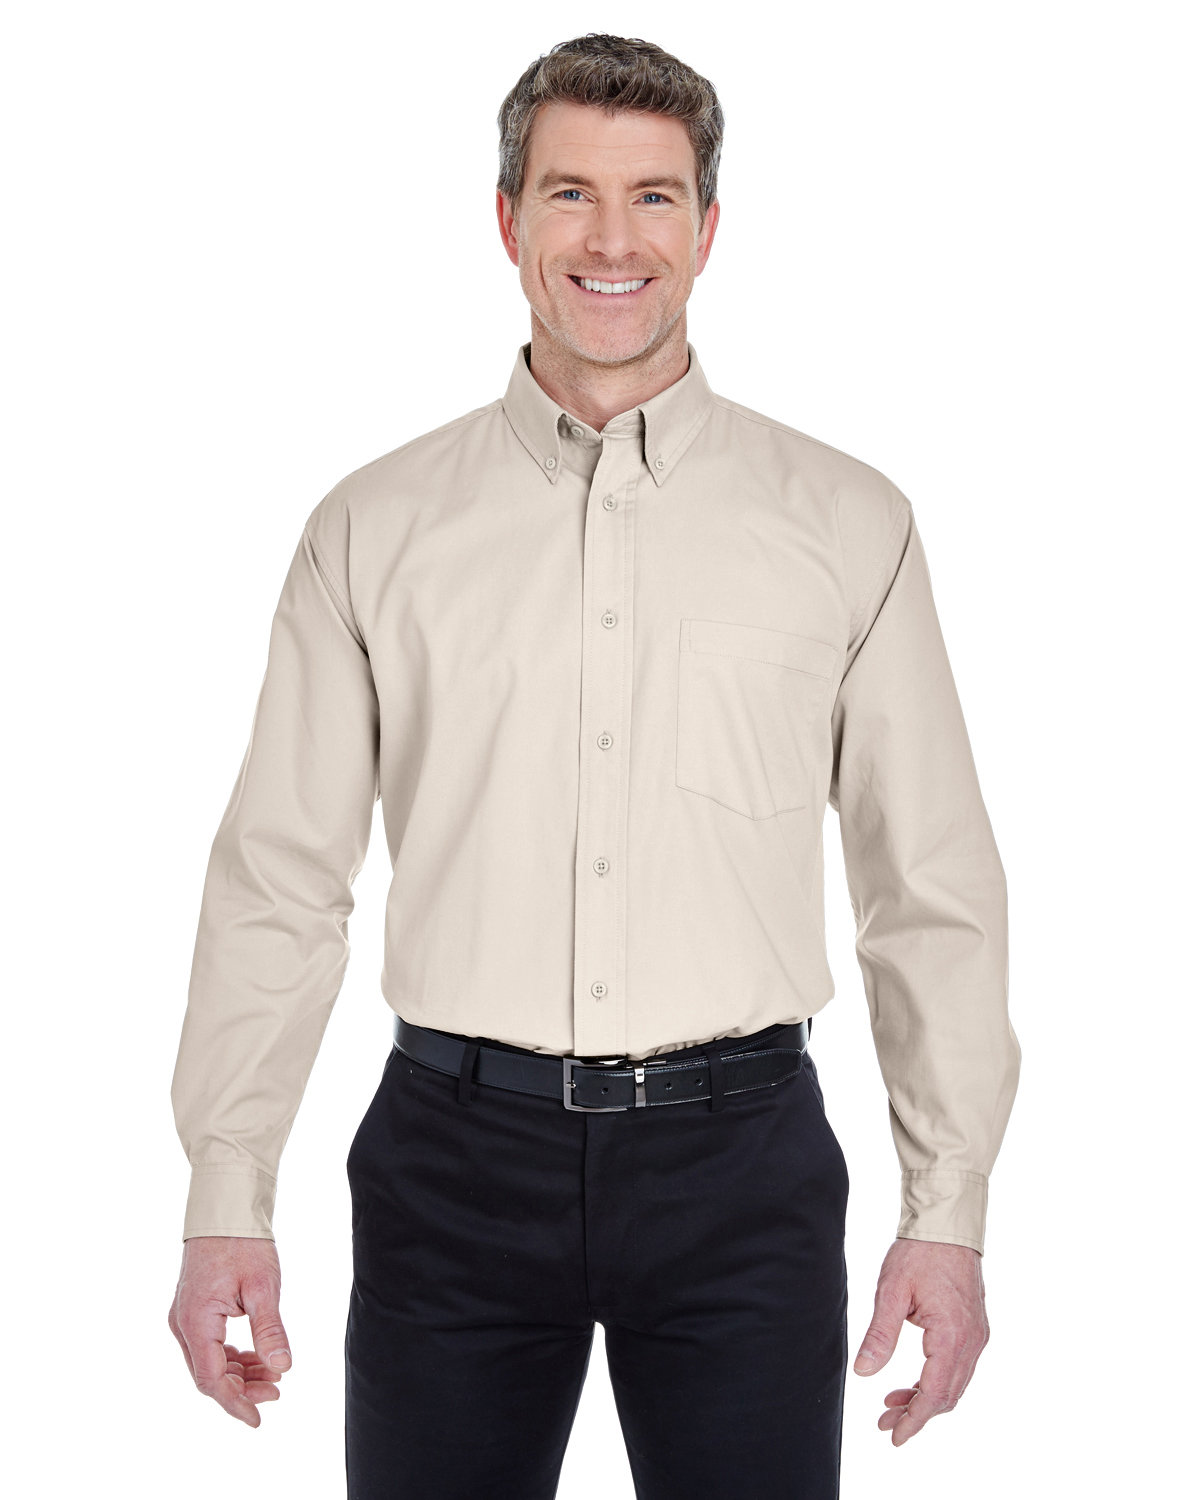 Ultra club - Men's Tall whisper twill shirt - style 8975T